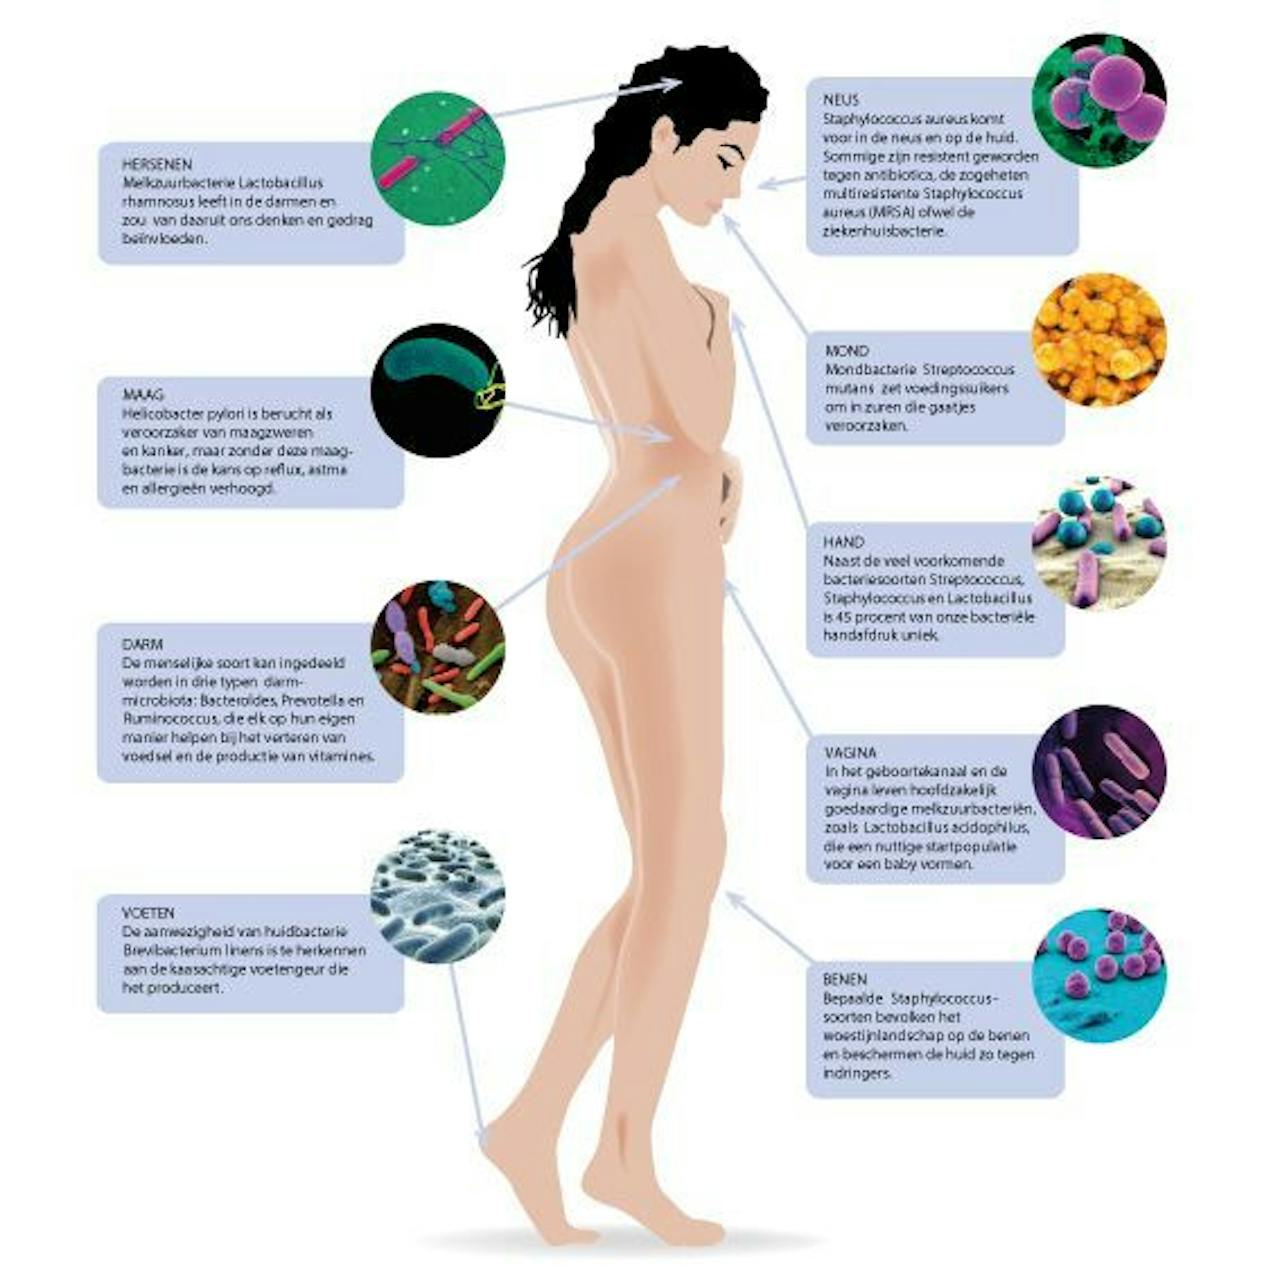 Het lichaam van een vrouw wordt afgebeeld met verschillende soorten mciro-organismen.